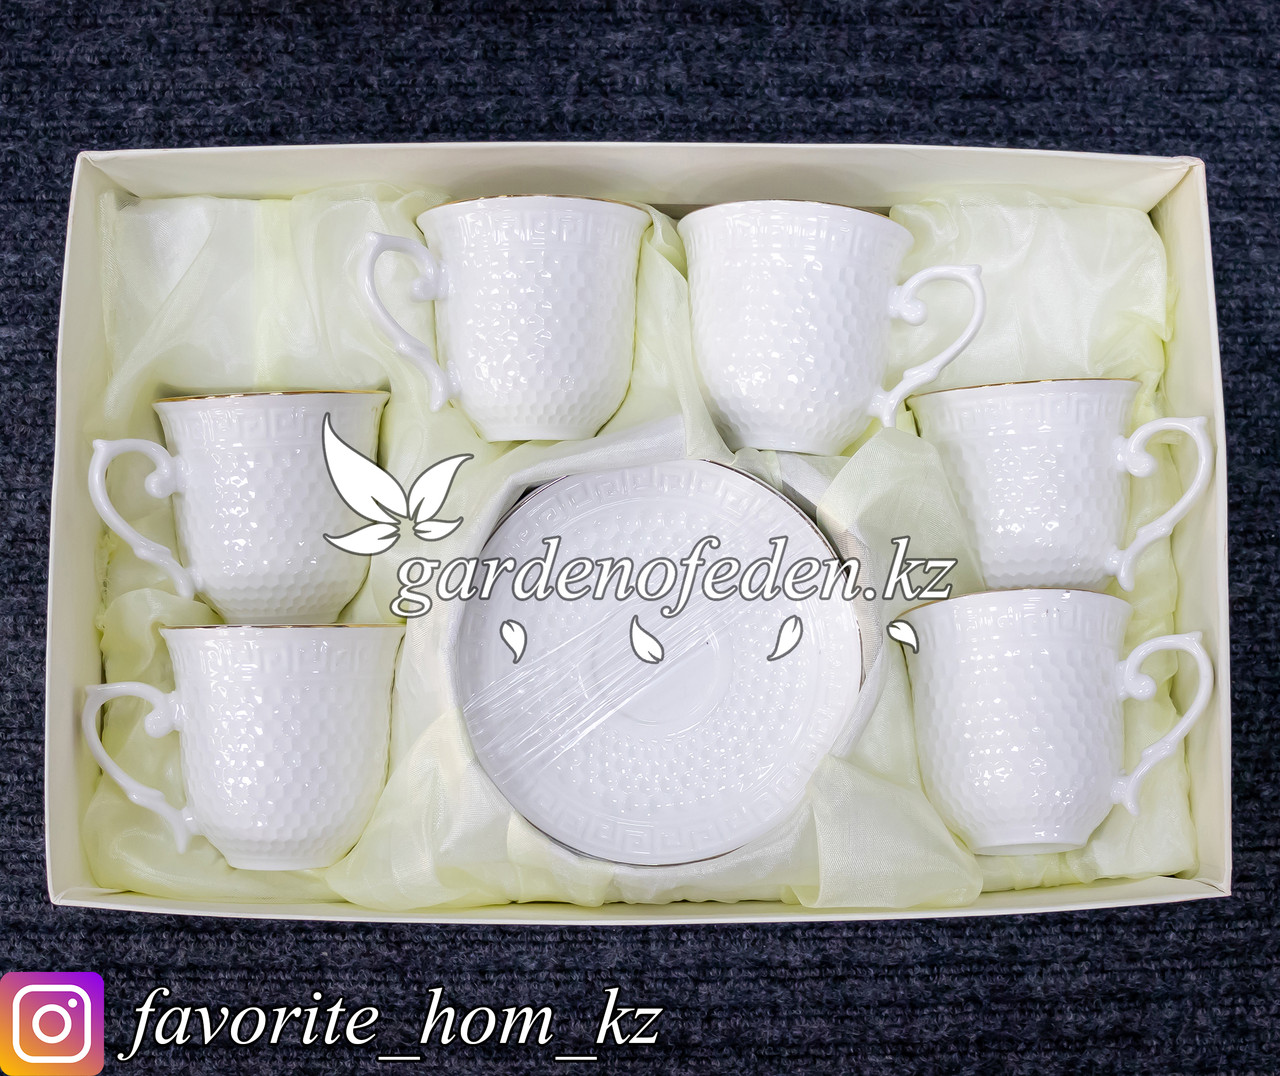 Набор керамических чашек с блюдцами. Материал: Керамика. Цвет: Белый. Набор: 6 Чашек + 6 блюдец.